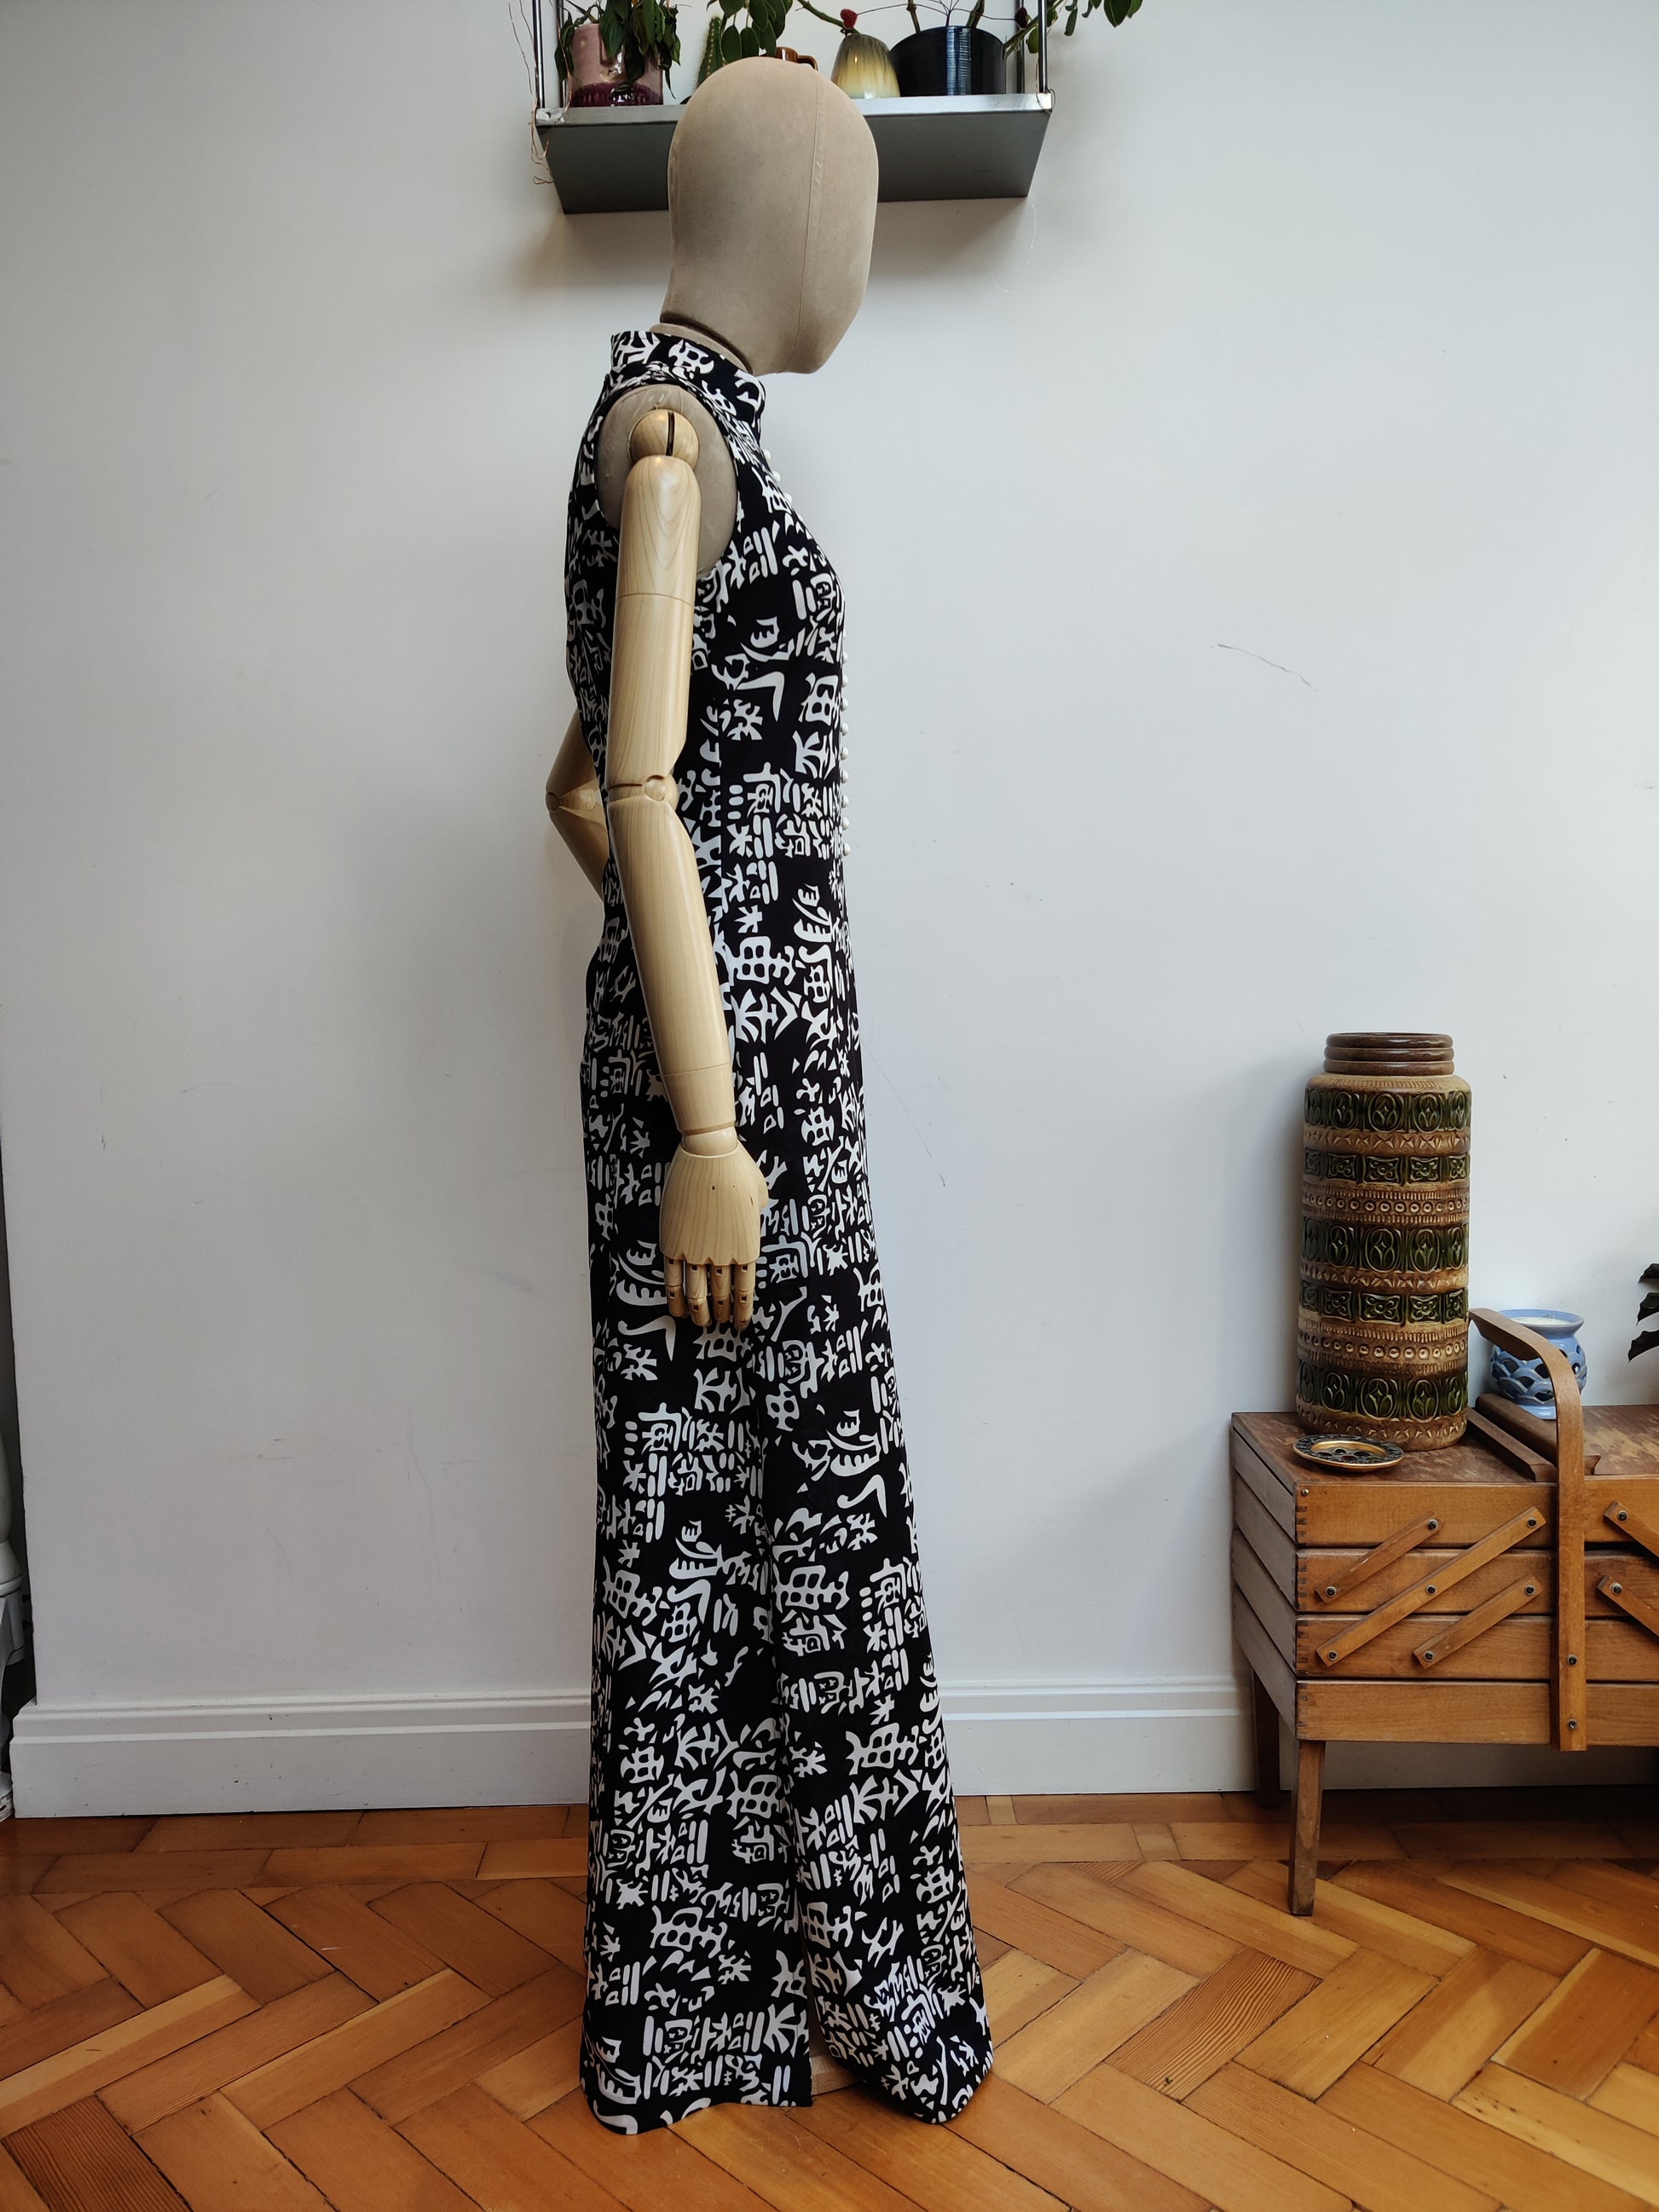 Monochrome maxi dress with side splits